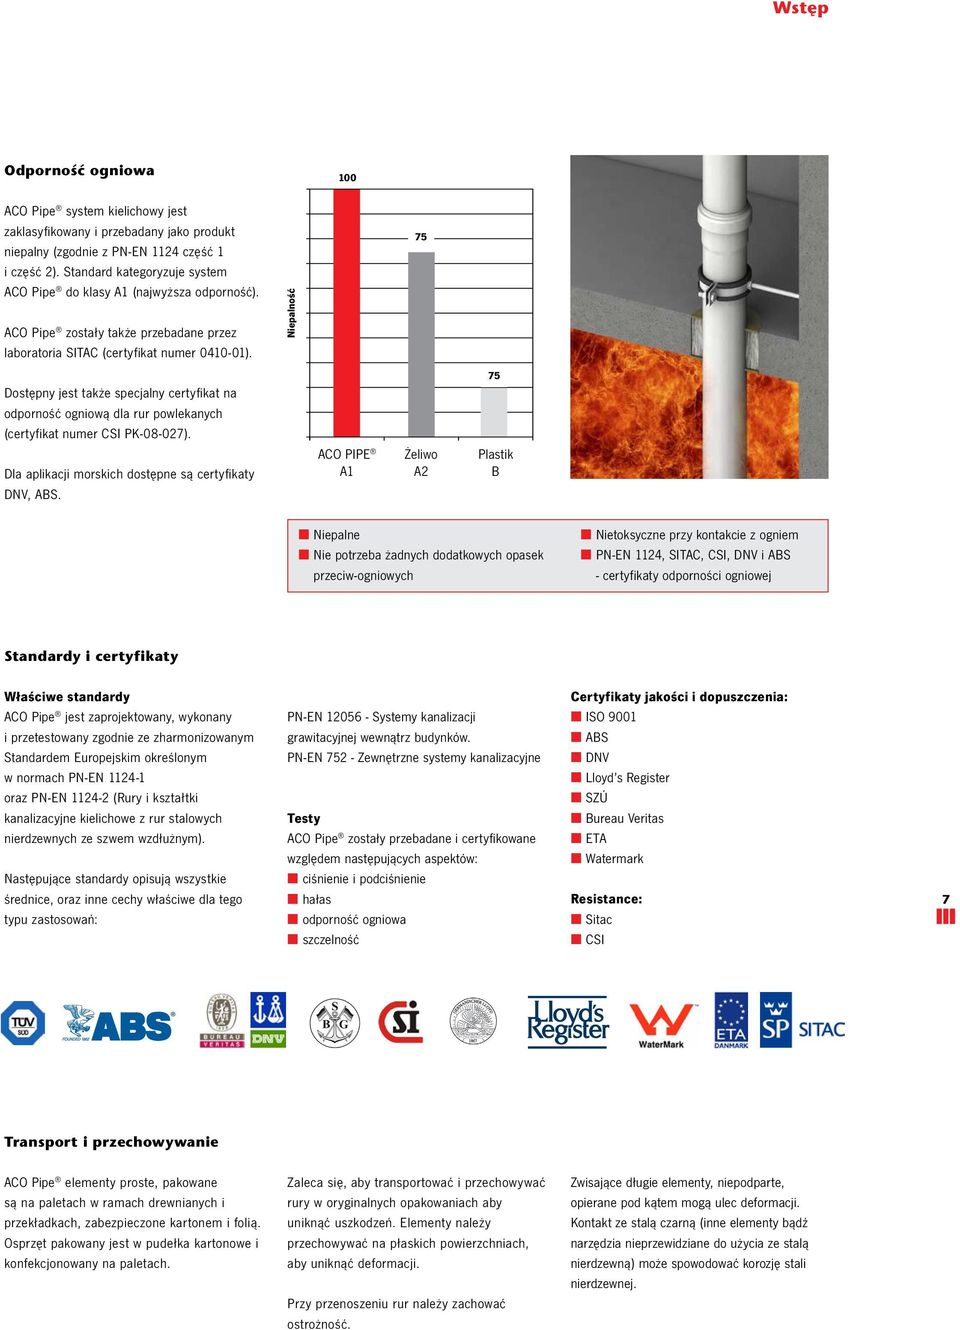 Nieplność 75 ostępny jest tkże specjlny certyfikt n odporność ogniową dl rur powleknych (certyfikt numer CSI PK08027). l plikcji morskich dostępne są certyfikty NV, ABS.